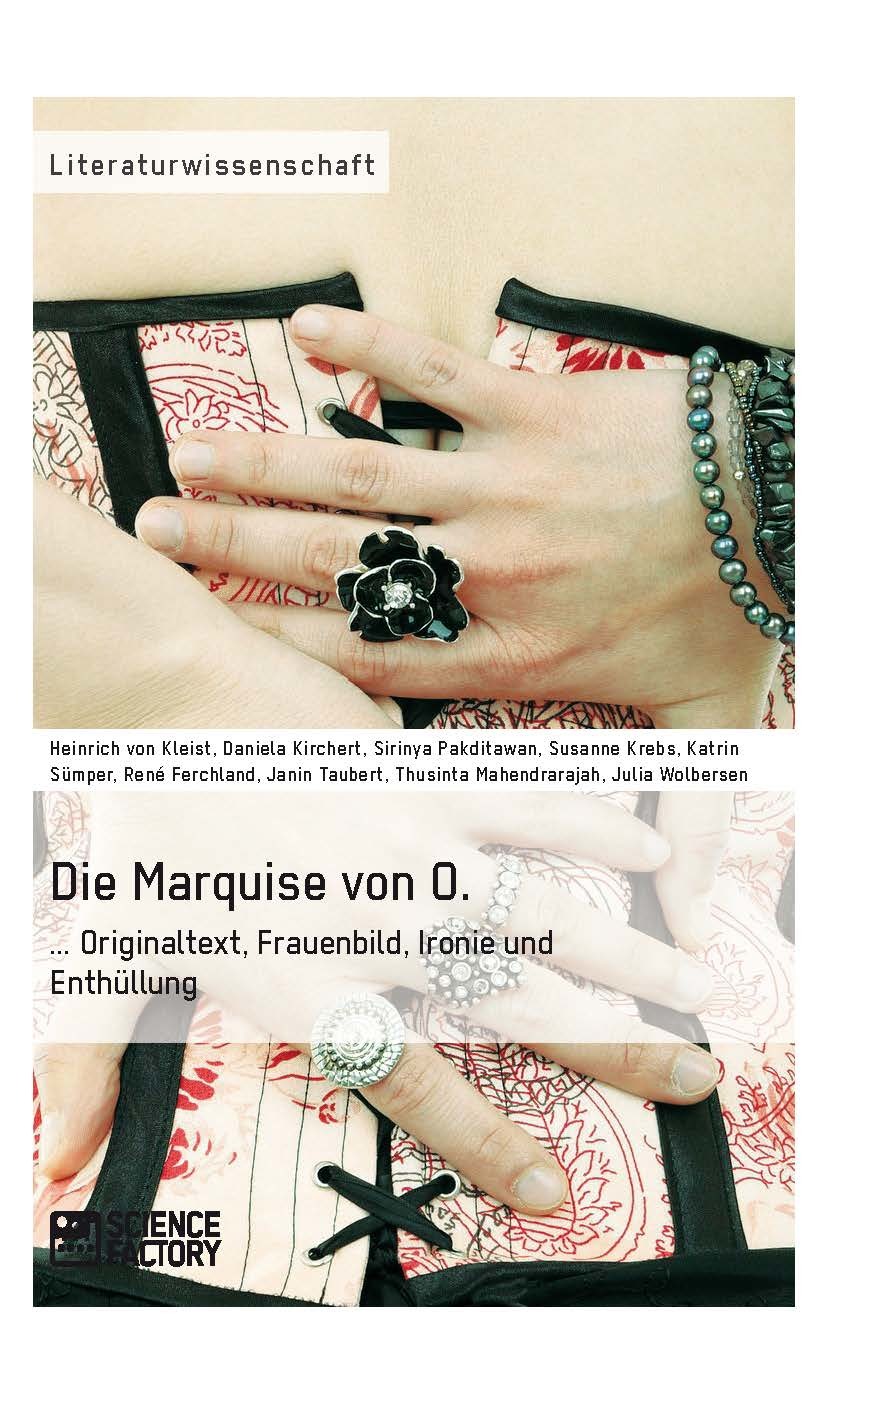 Title: Die Marquise von O. Originaltext, Frauenbild, Ironie und Enthüllung